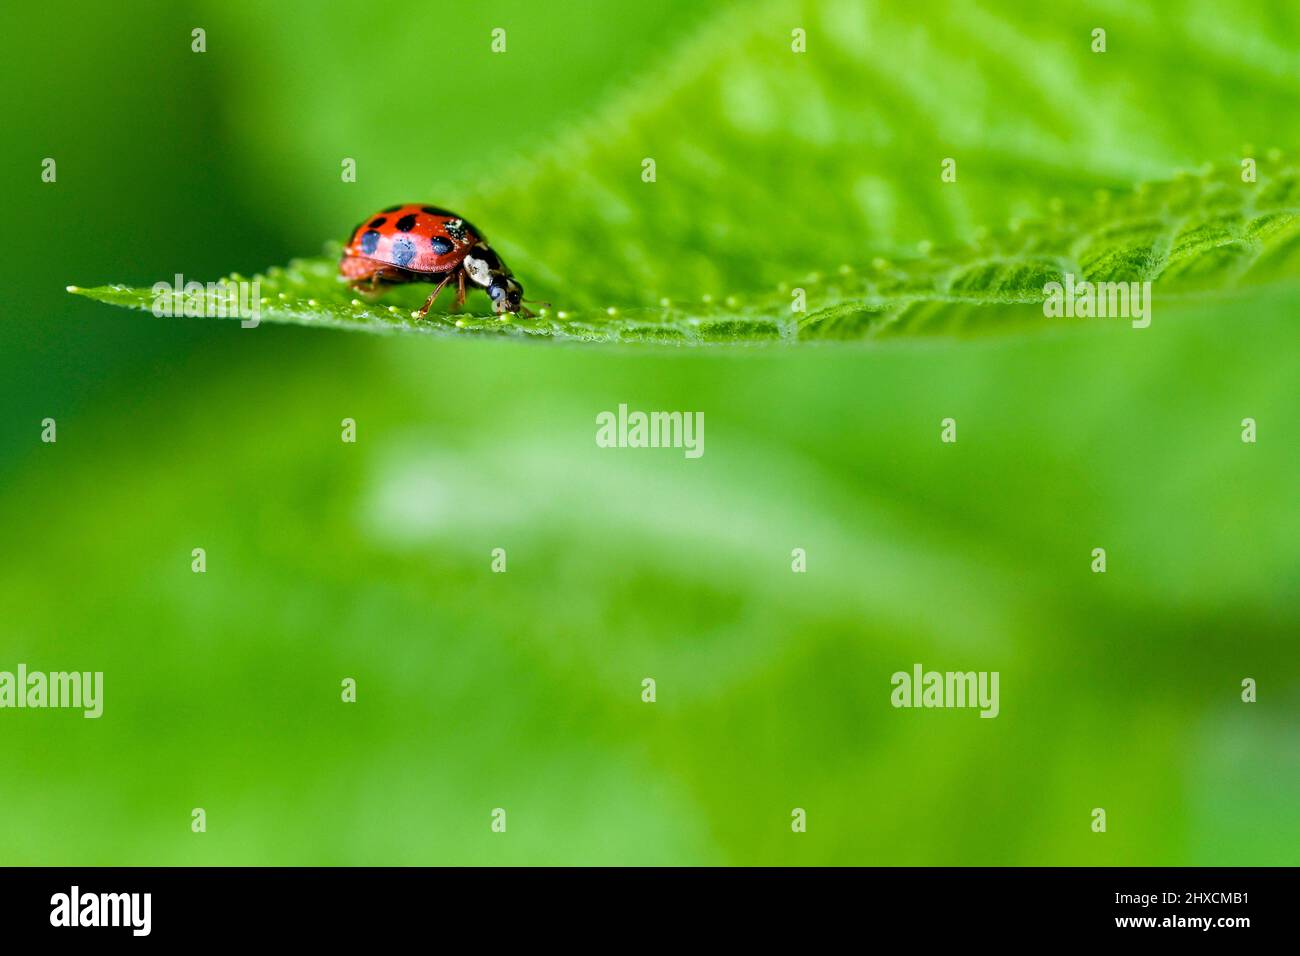 Coccinellidae, ladybug, coleoptera, flying beetle Stock Photo